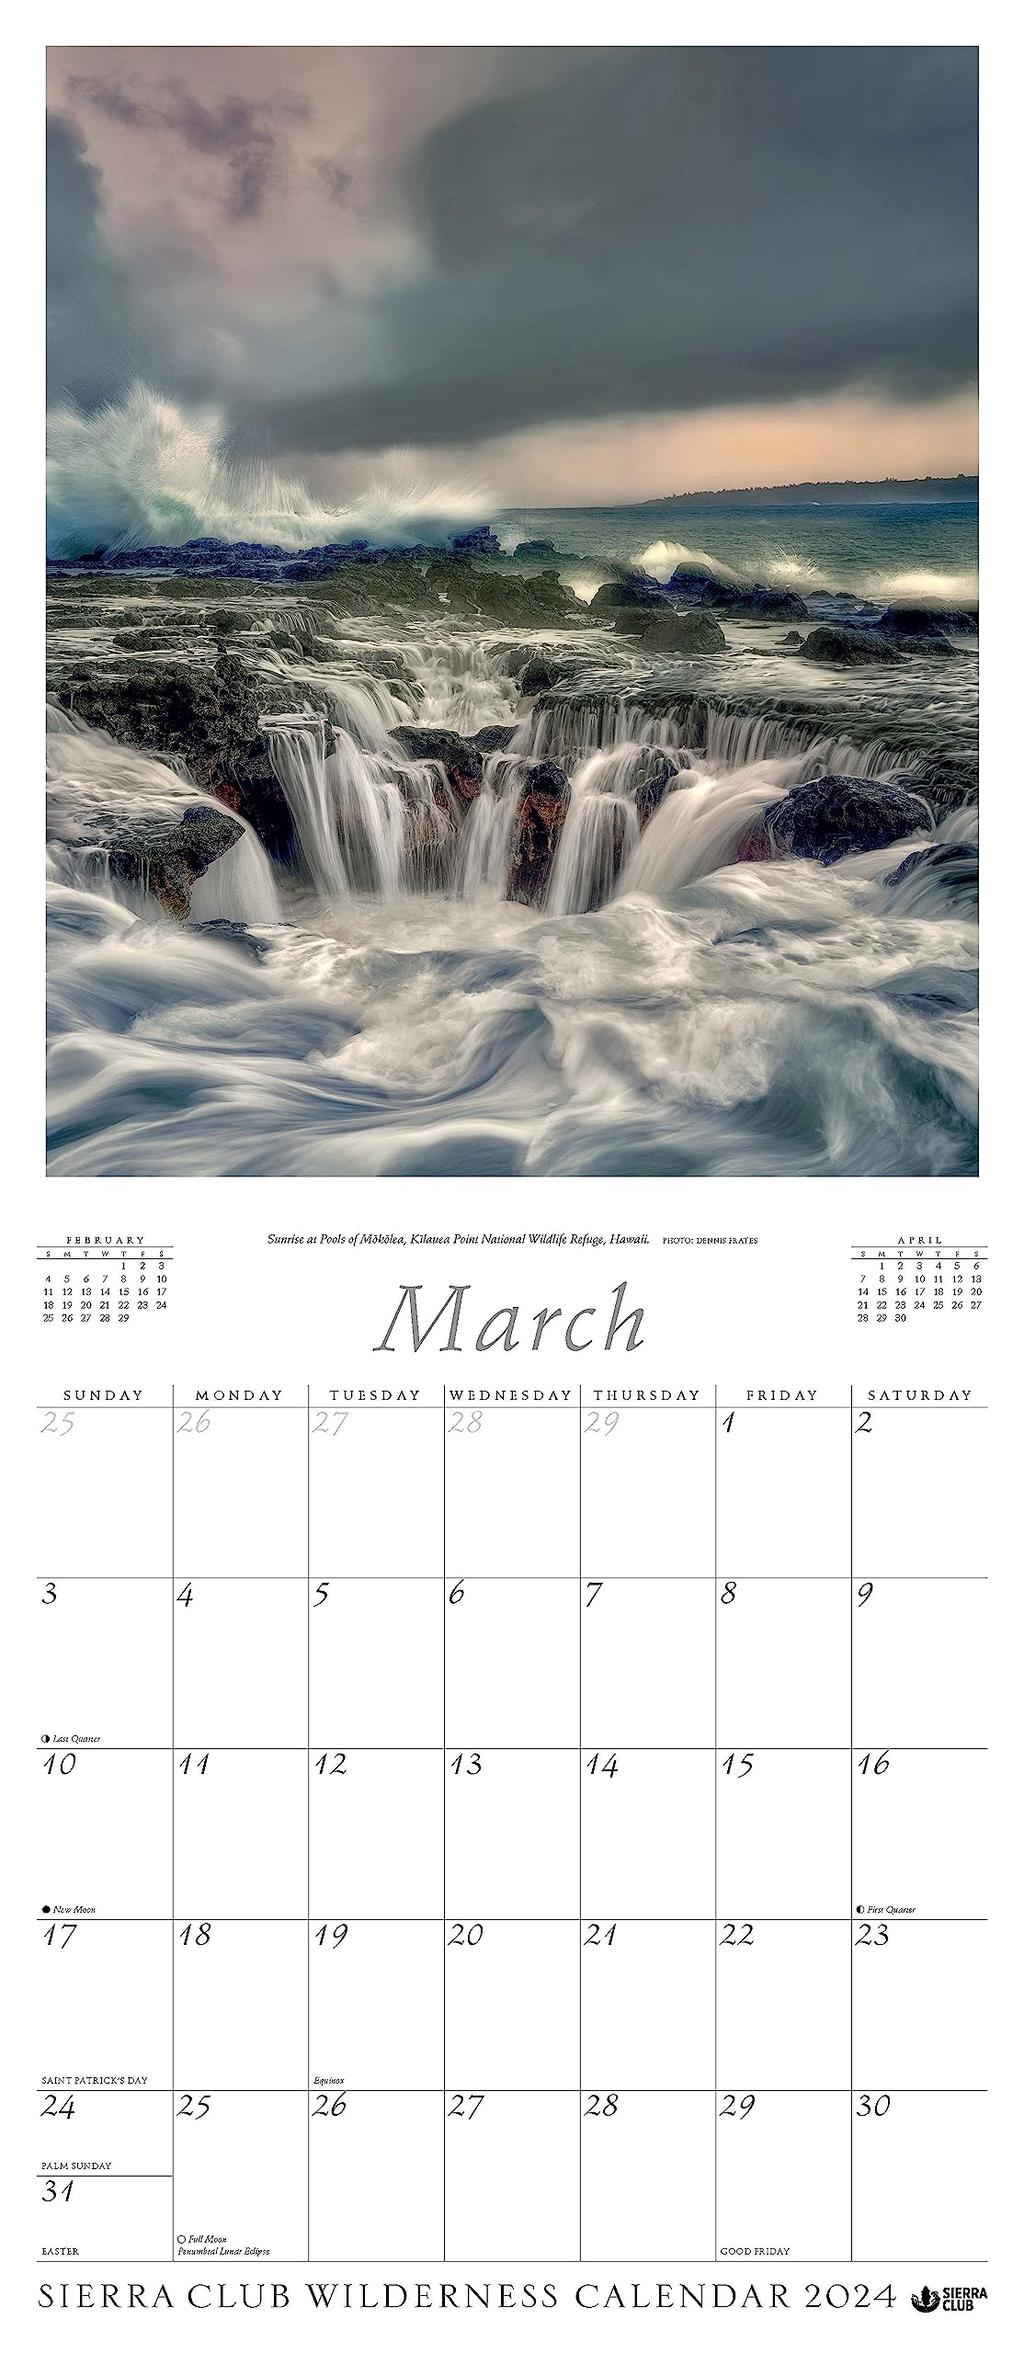 Sierra Club Wilderness 2024 Wall Calendar March